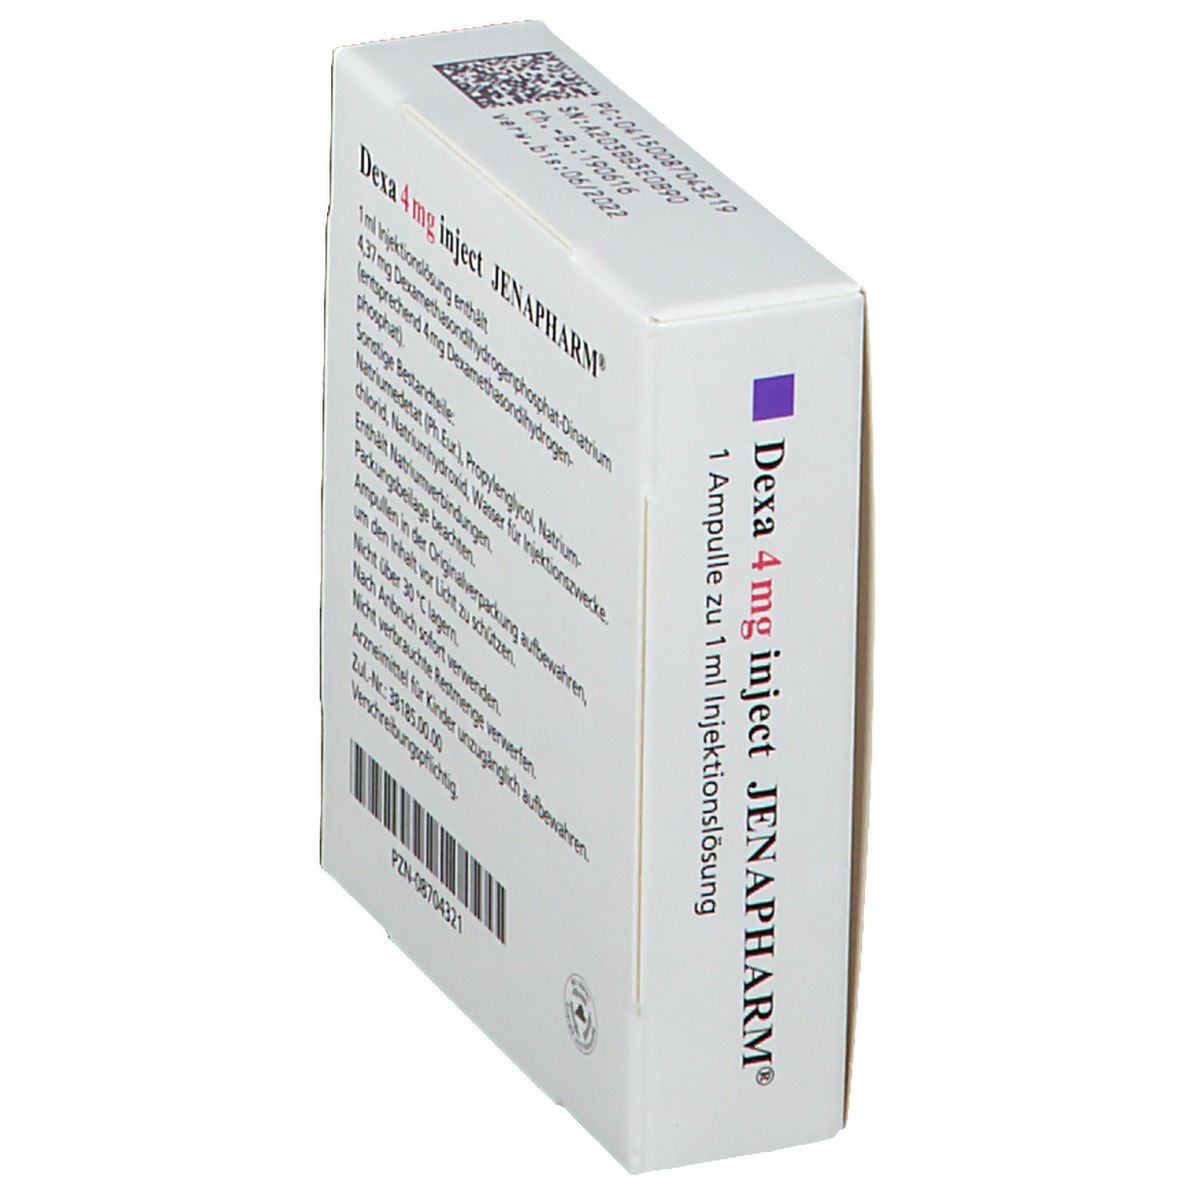 Dexa 4 mg